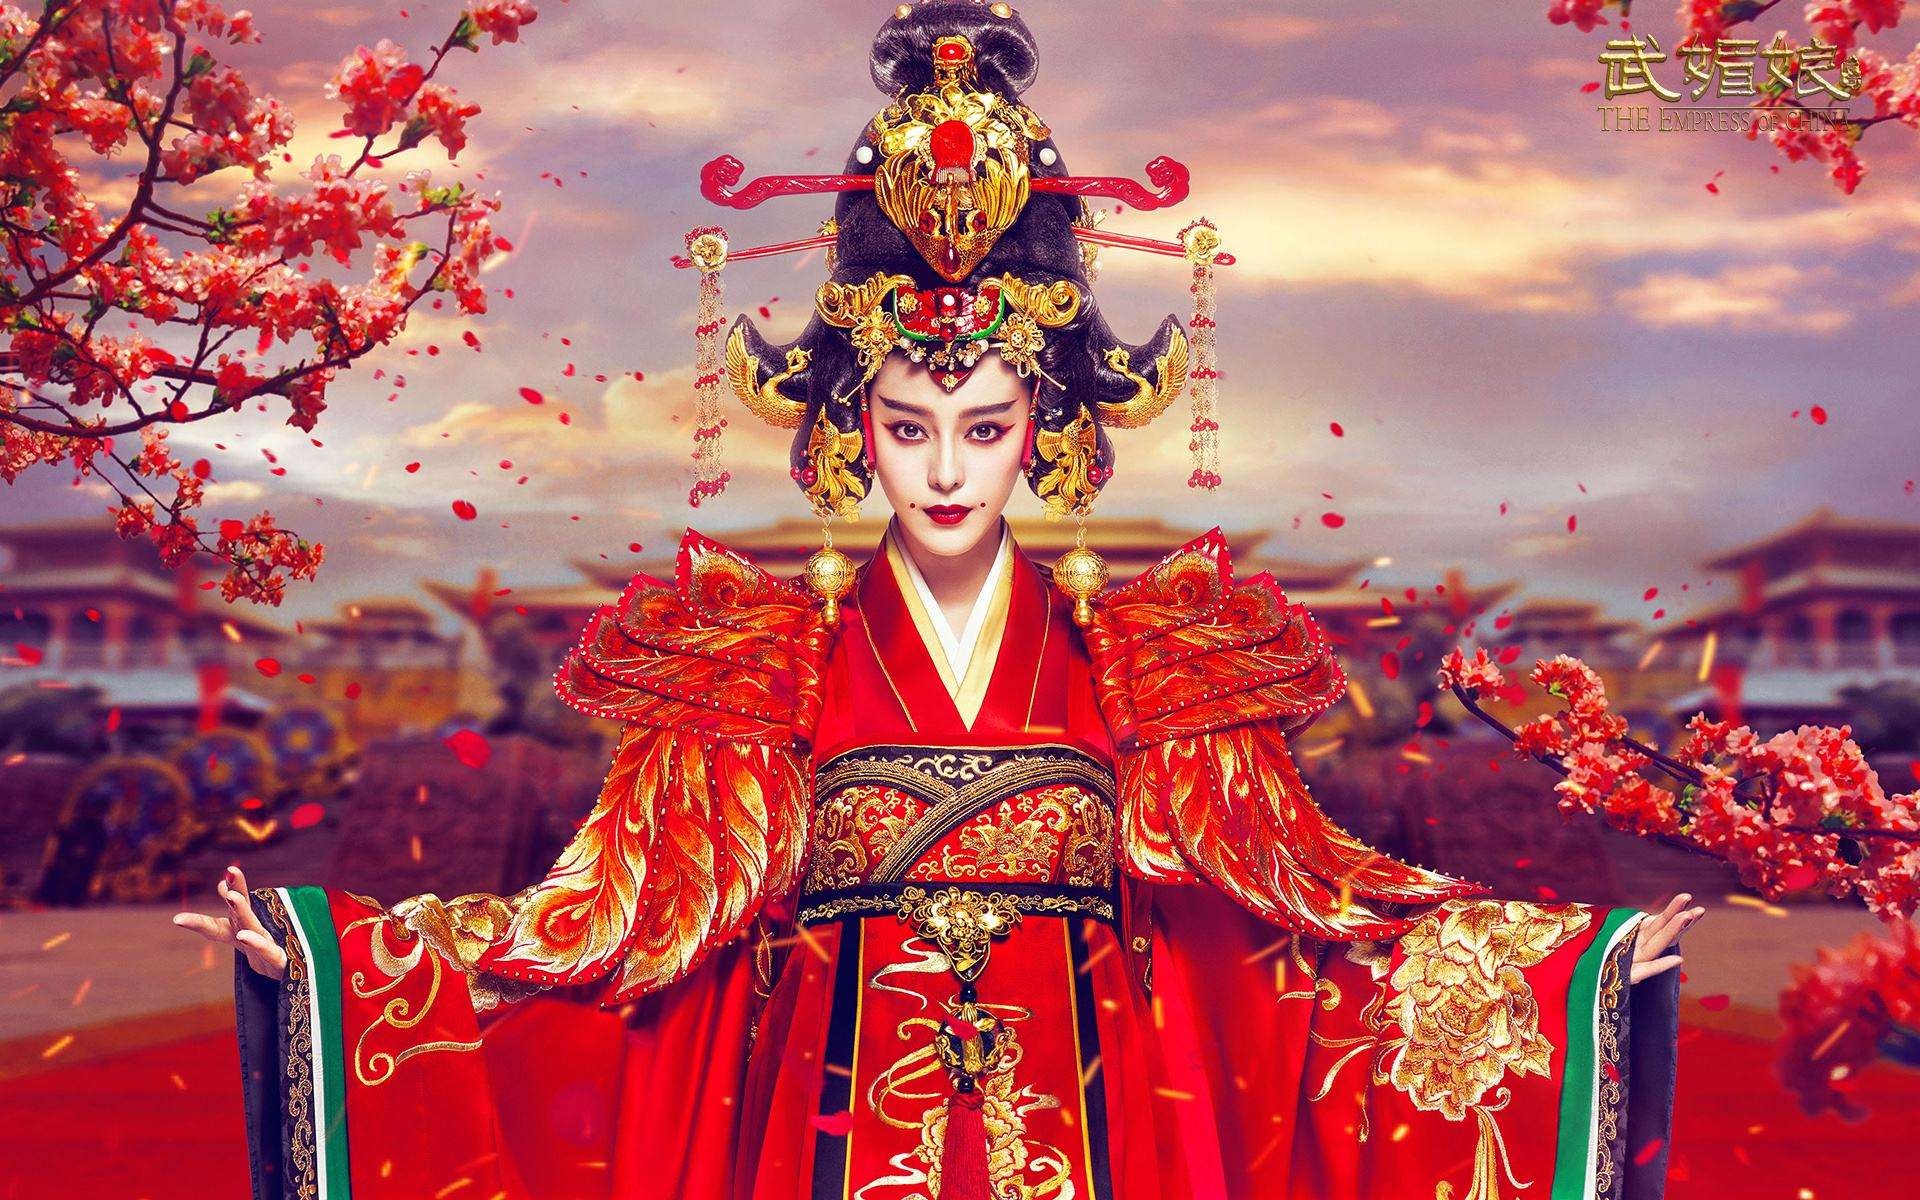 Poster cổ trang trong chiếc áo choàng đỏ của Wu Zetyan rất đẹp